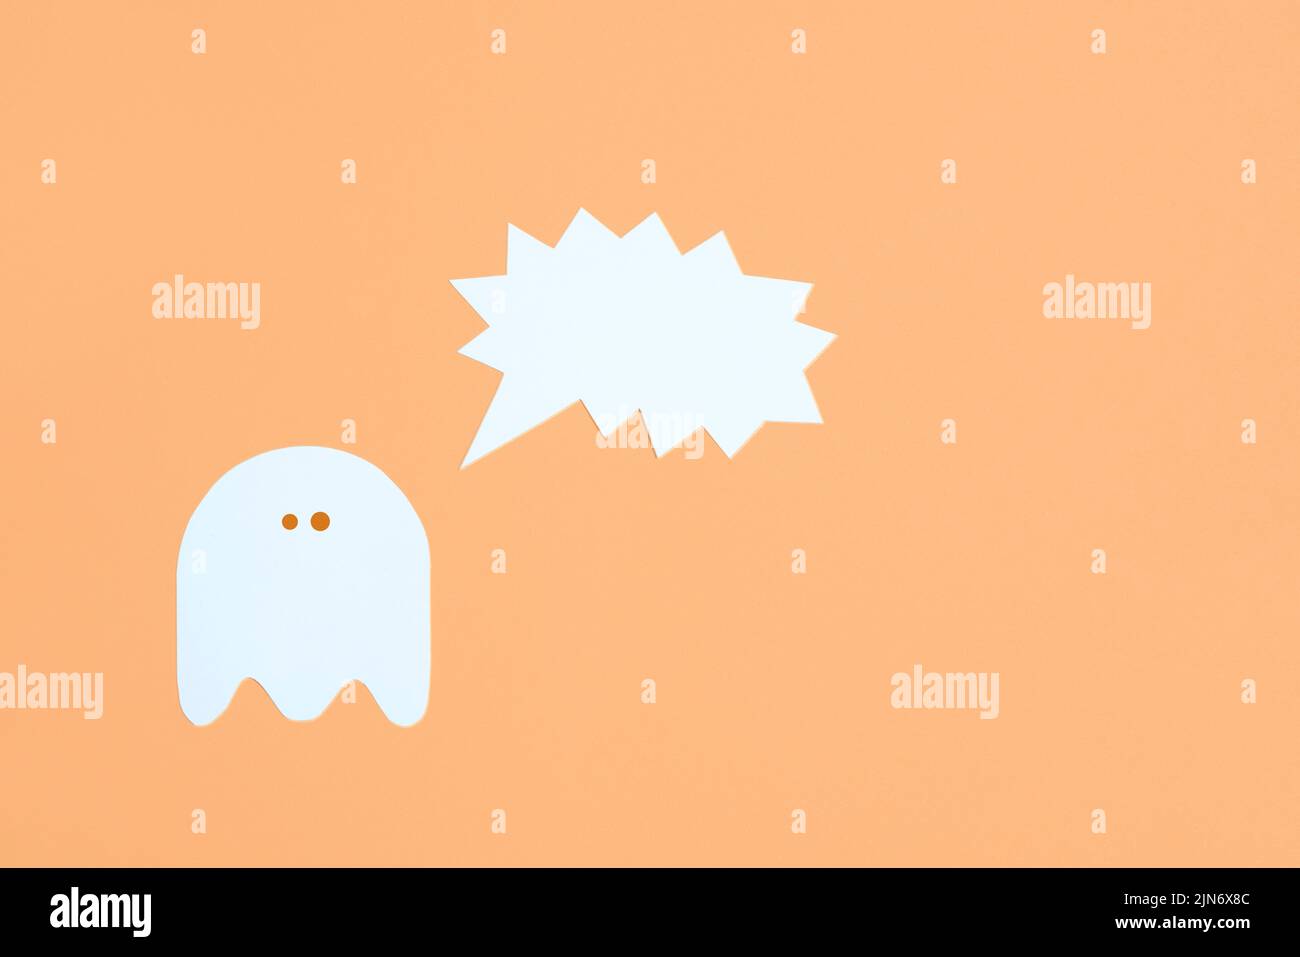 Design halloween alla moda, fantasma bianco carino con una bolla vocale vuota urlante su sfondo color arancio pastello, composizione minimale con spazio di copia. Foto Stock